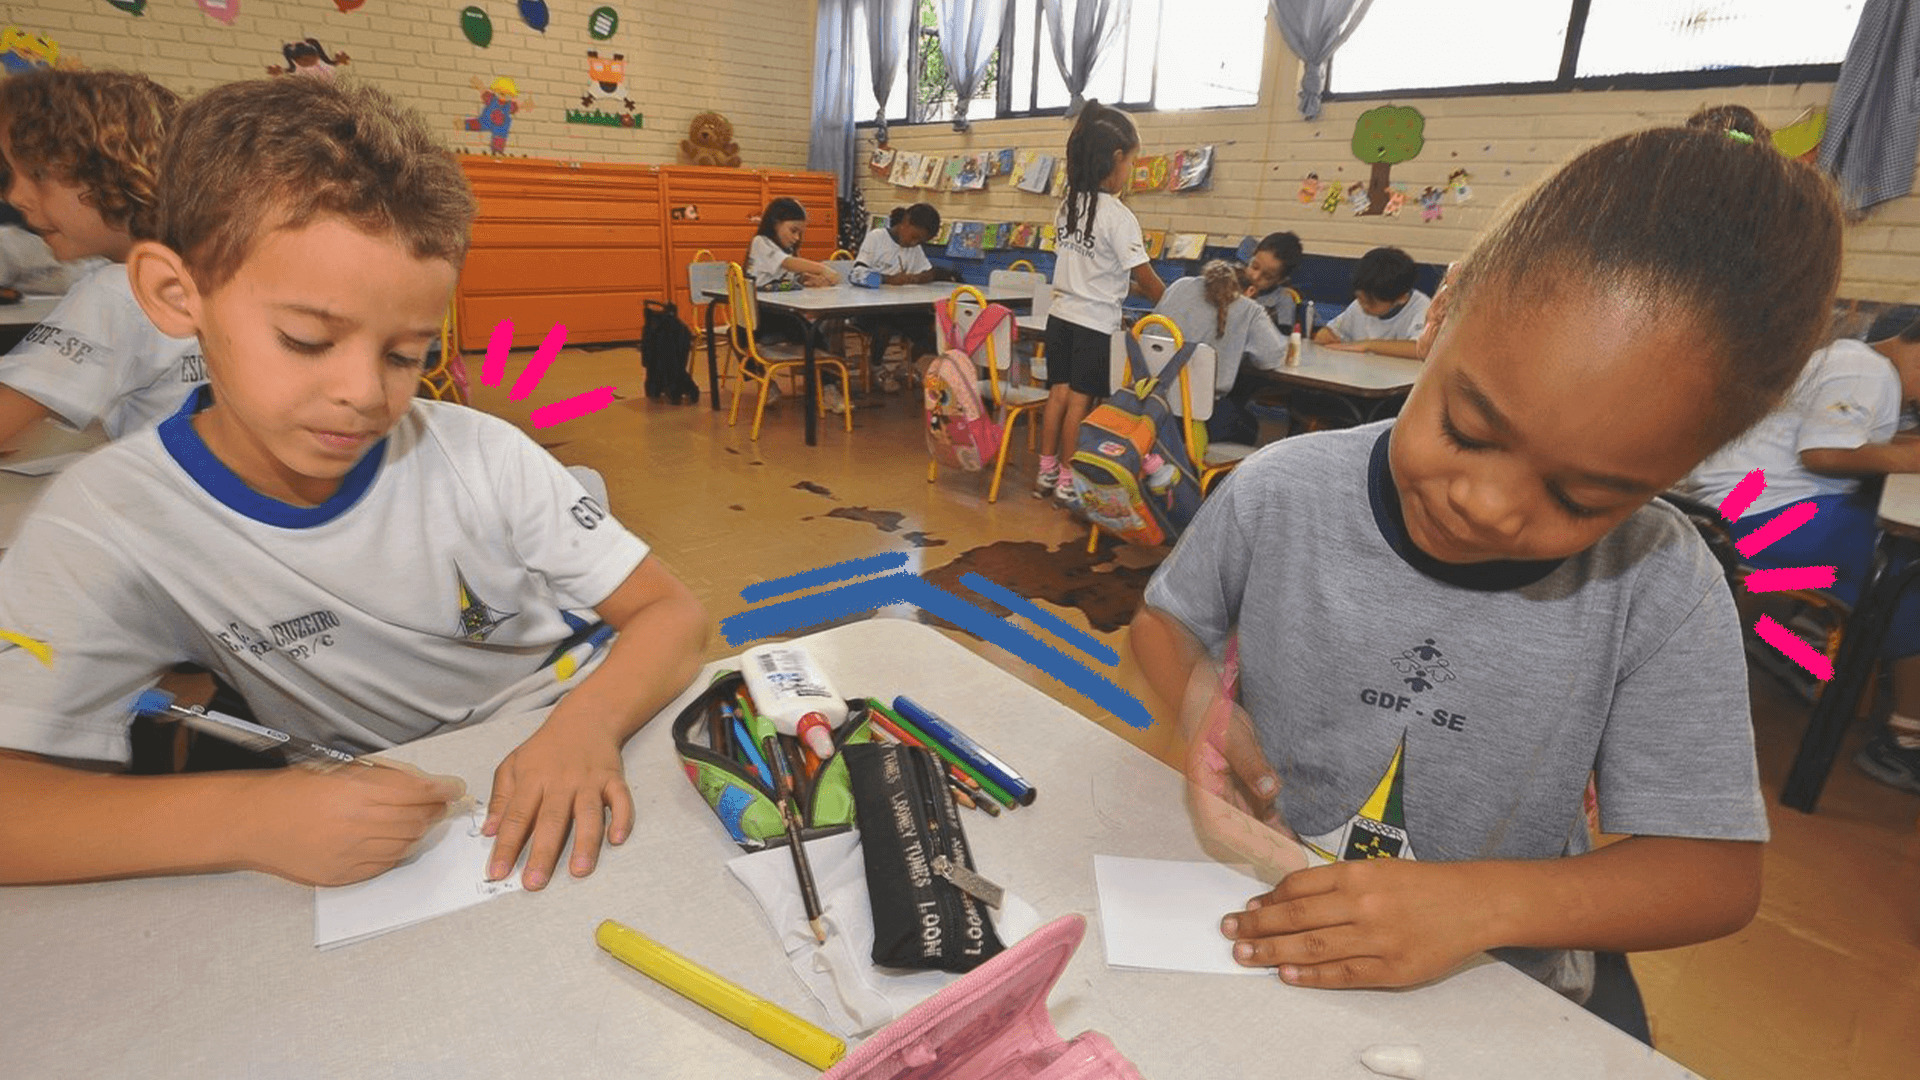 Imagem ilustra a matéria sobre a pesquisa educação infantil mostra uma sala de aula e duas crianças negras com uniforme, sentadas fazendo uma tarefa com lápis e papel.